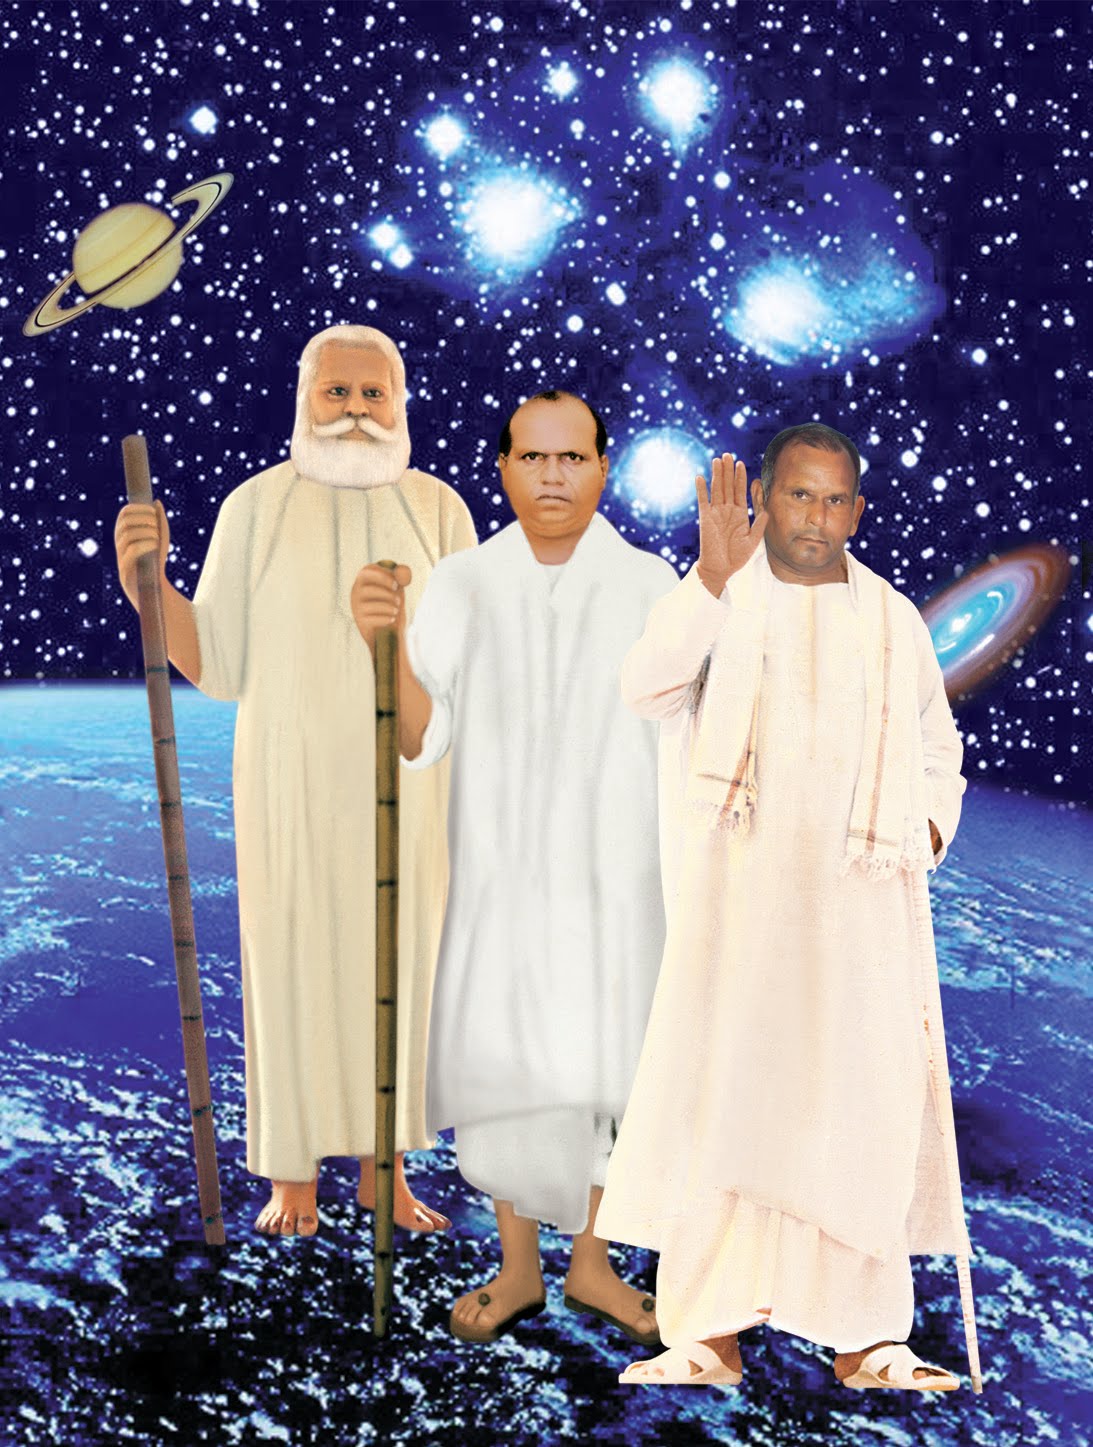 Vihangam Yoga Swami Sadguru Sadafal dev ji Maharaj Swarved katha